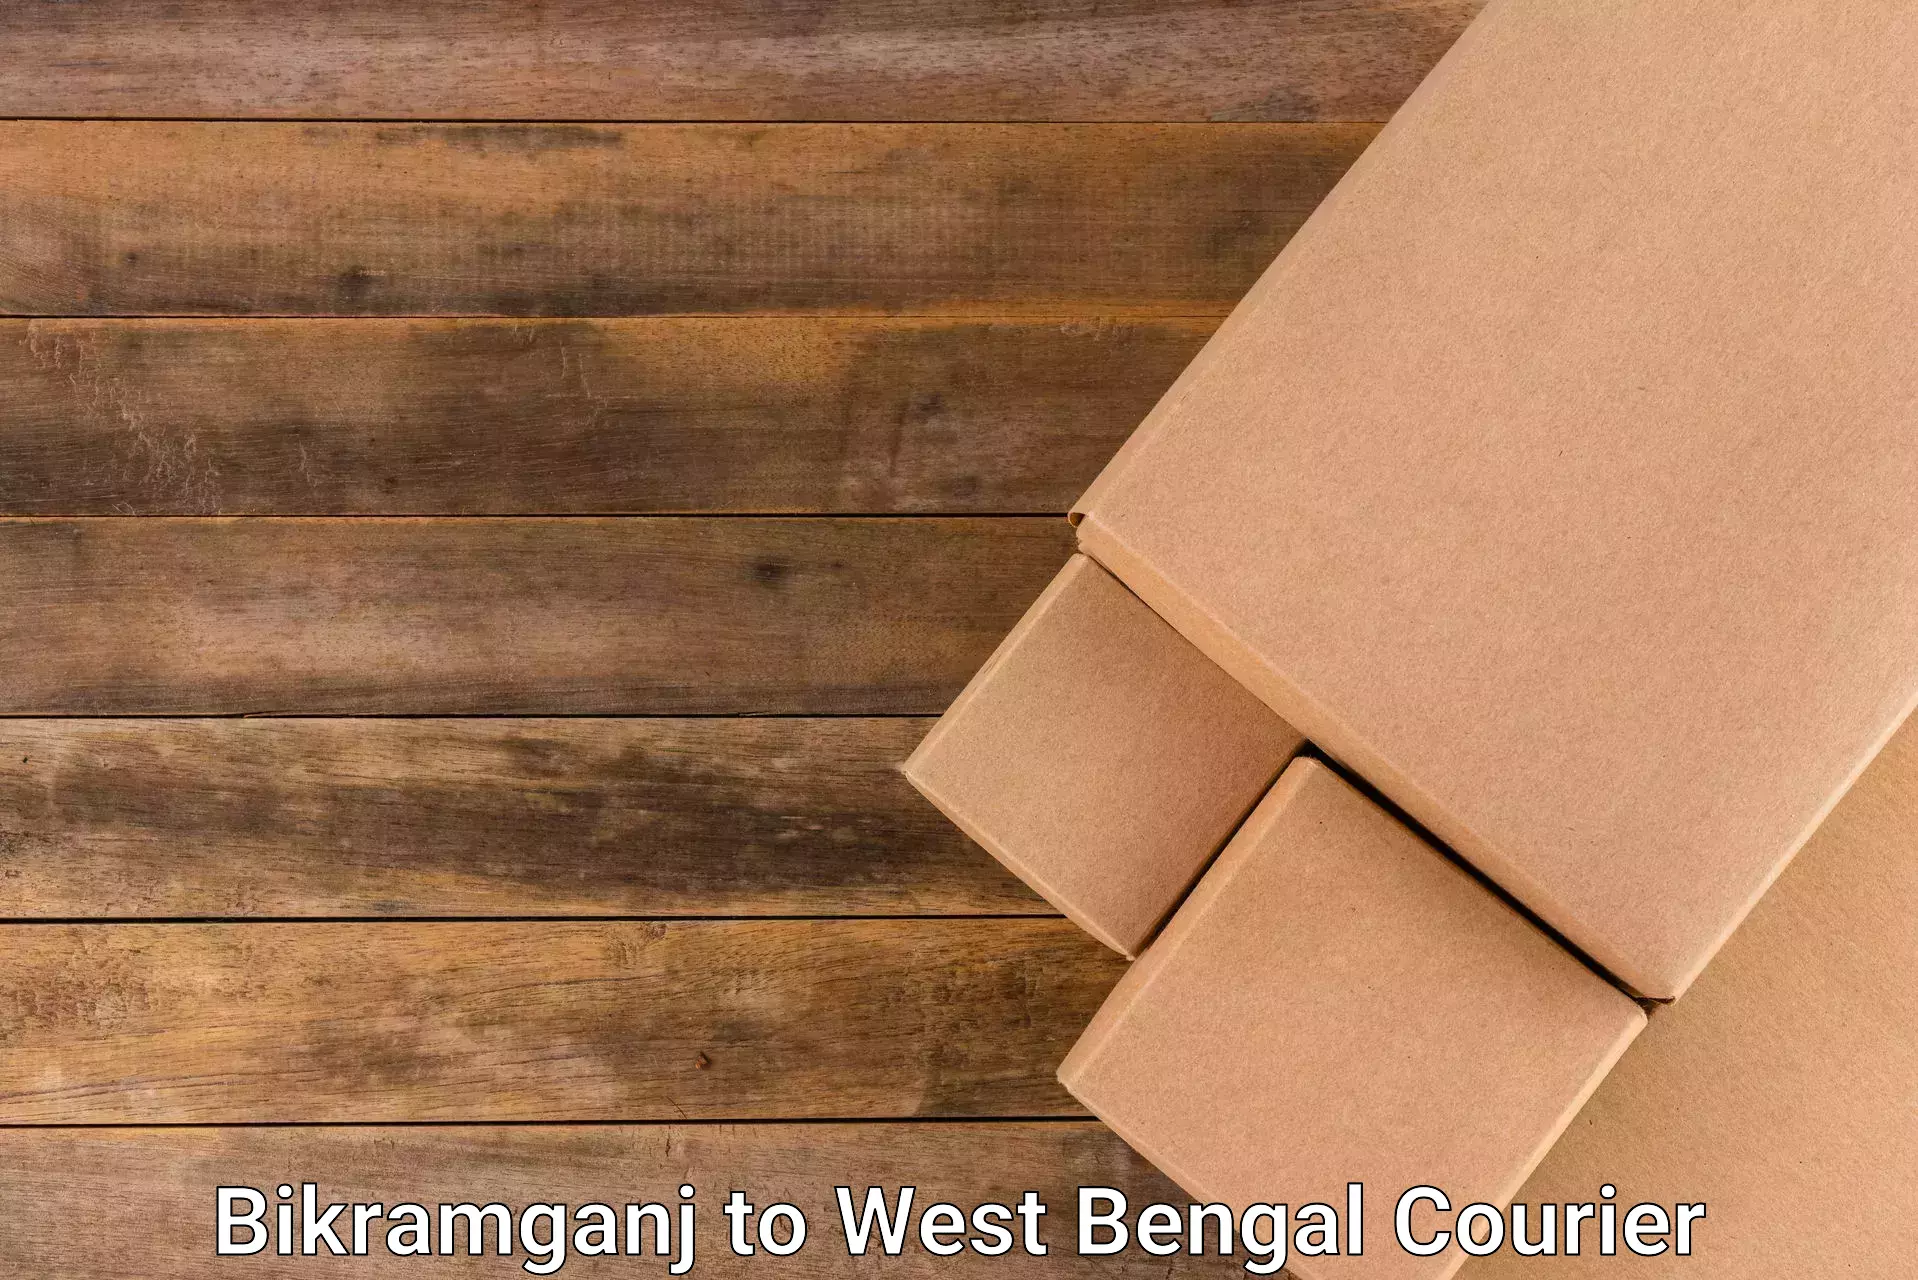 Parcel service for businesses Bikramganj to Adampur Barddhaman